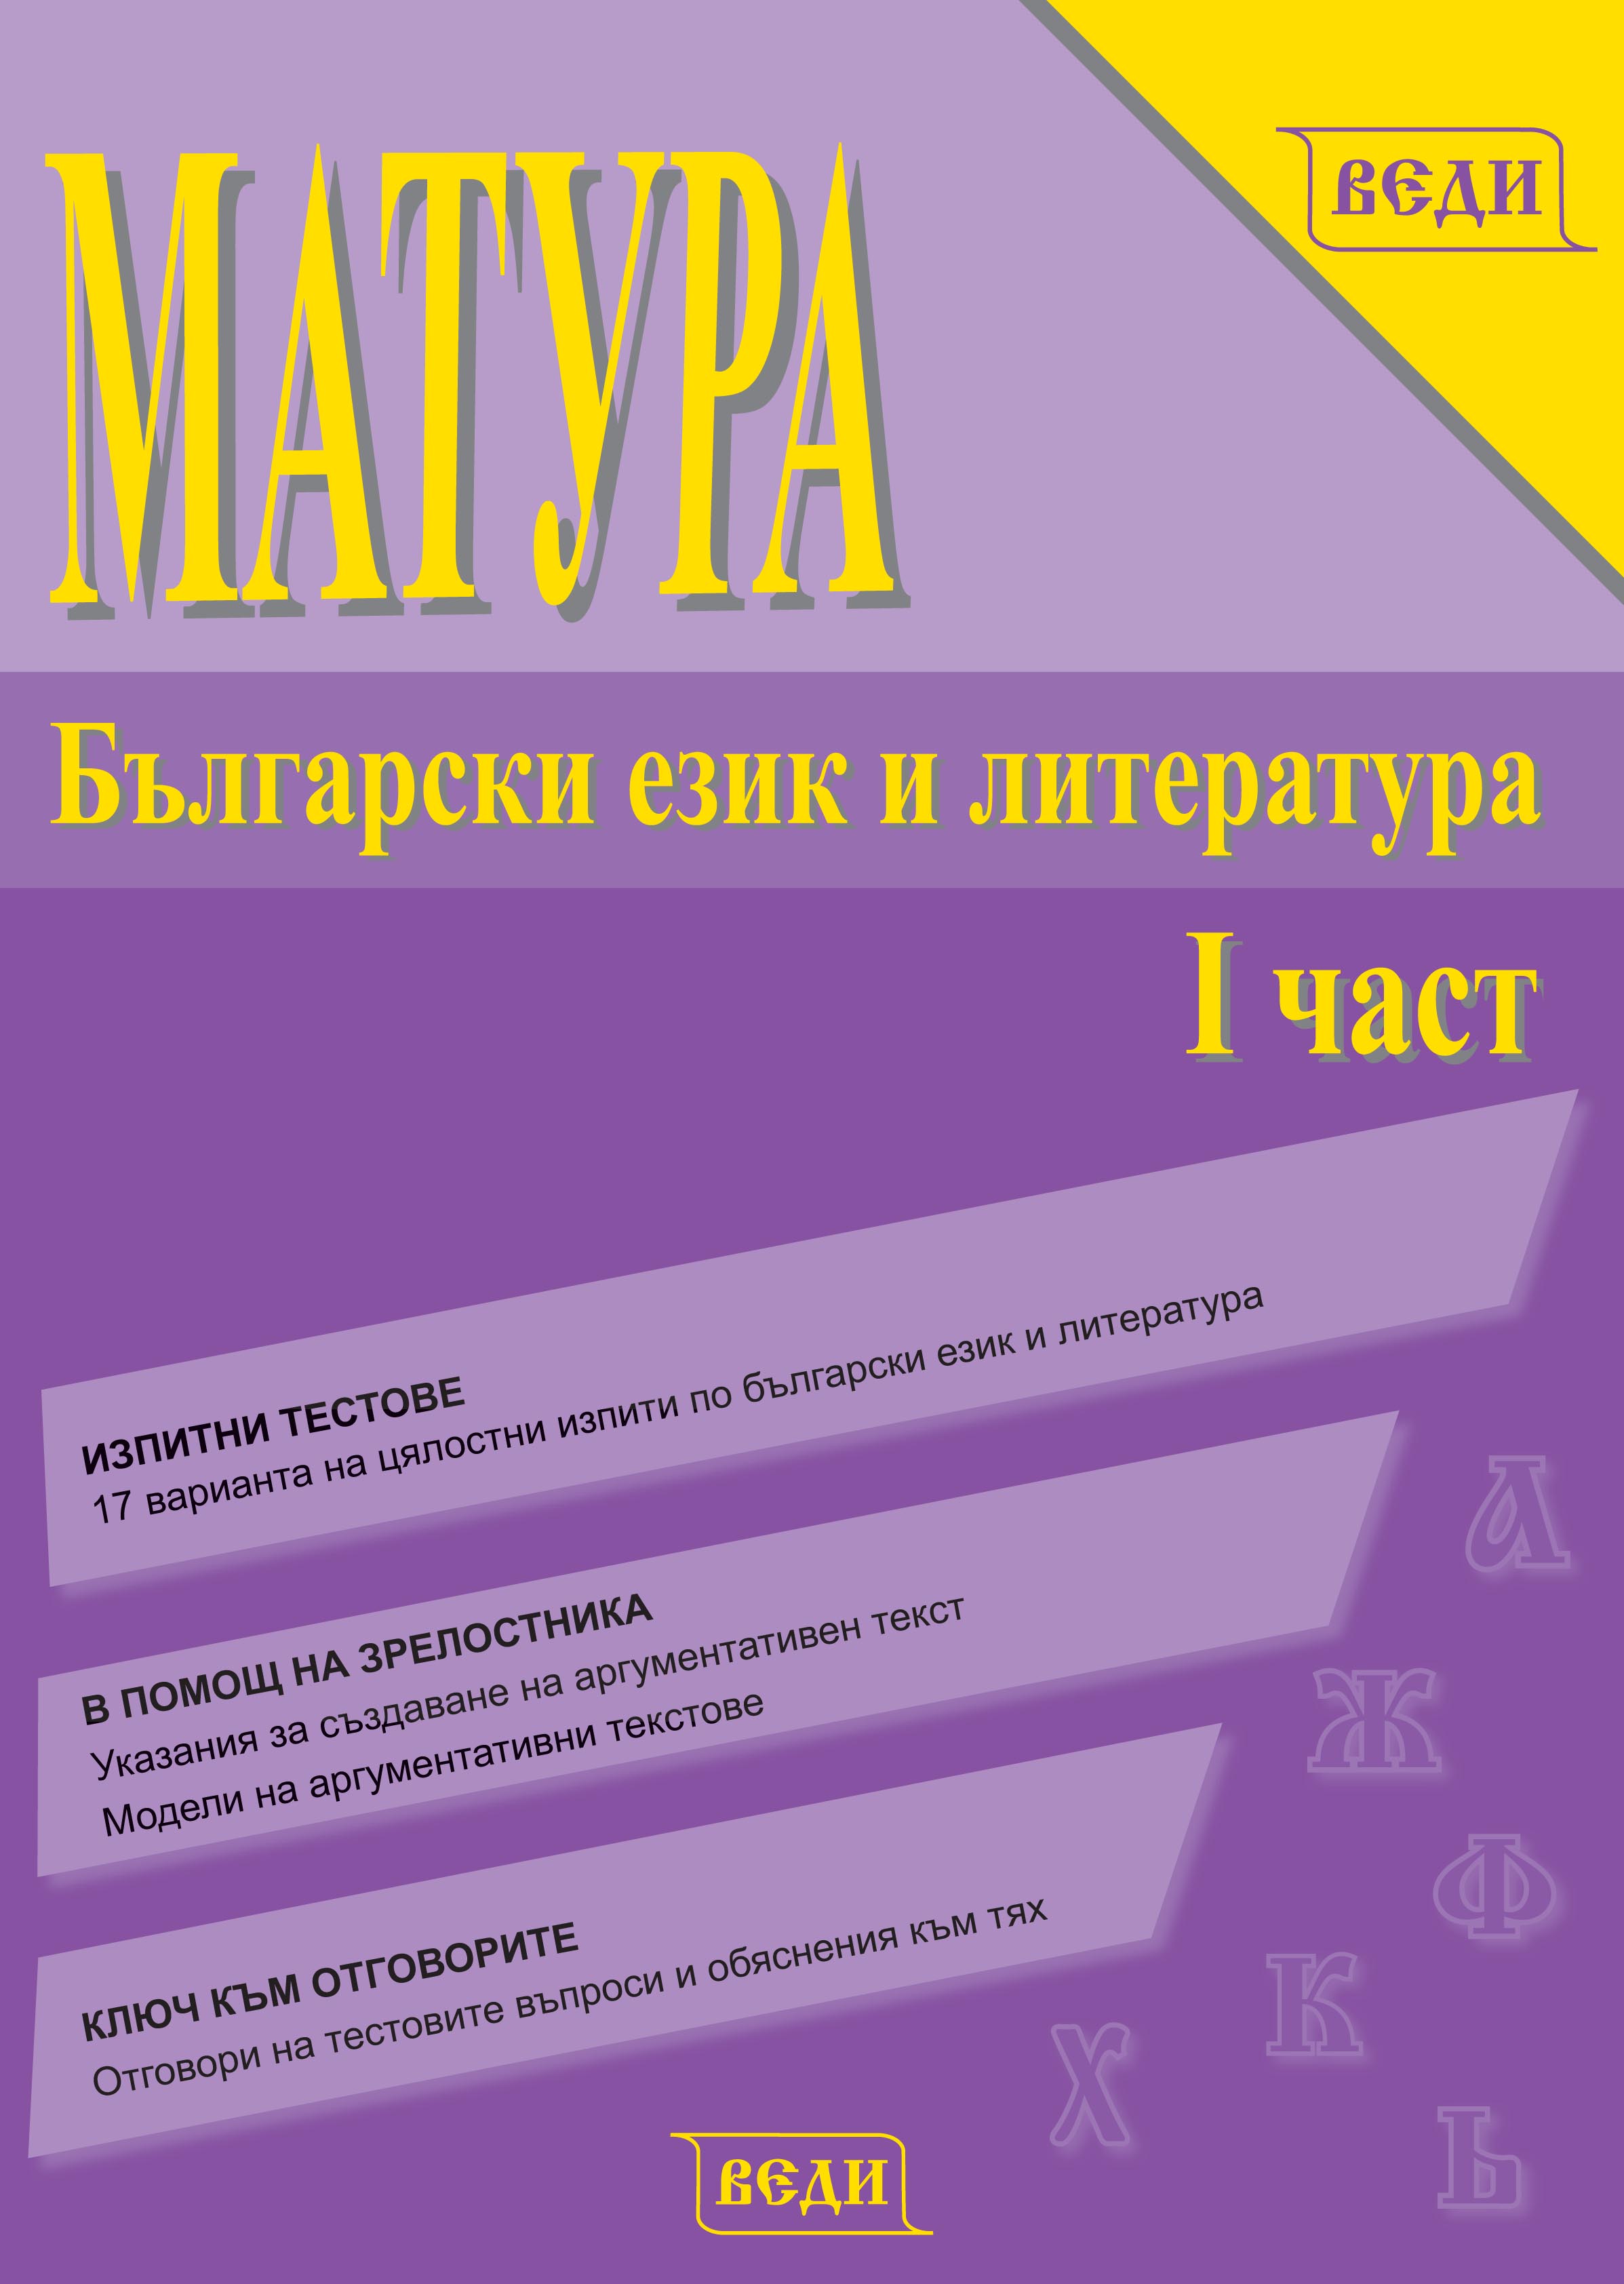 Матура. Български език и литература, I част - Изчерпана